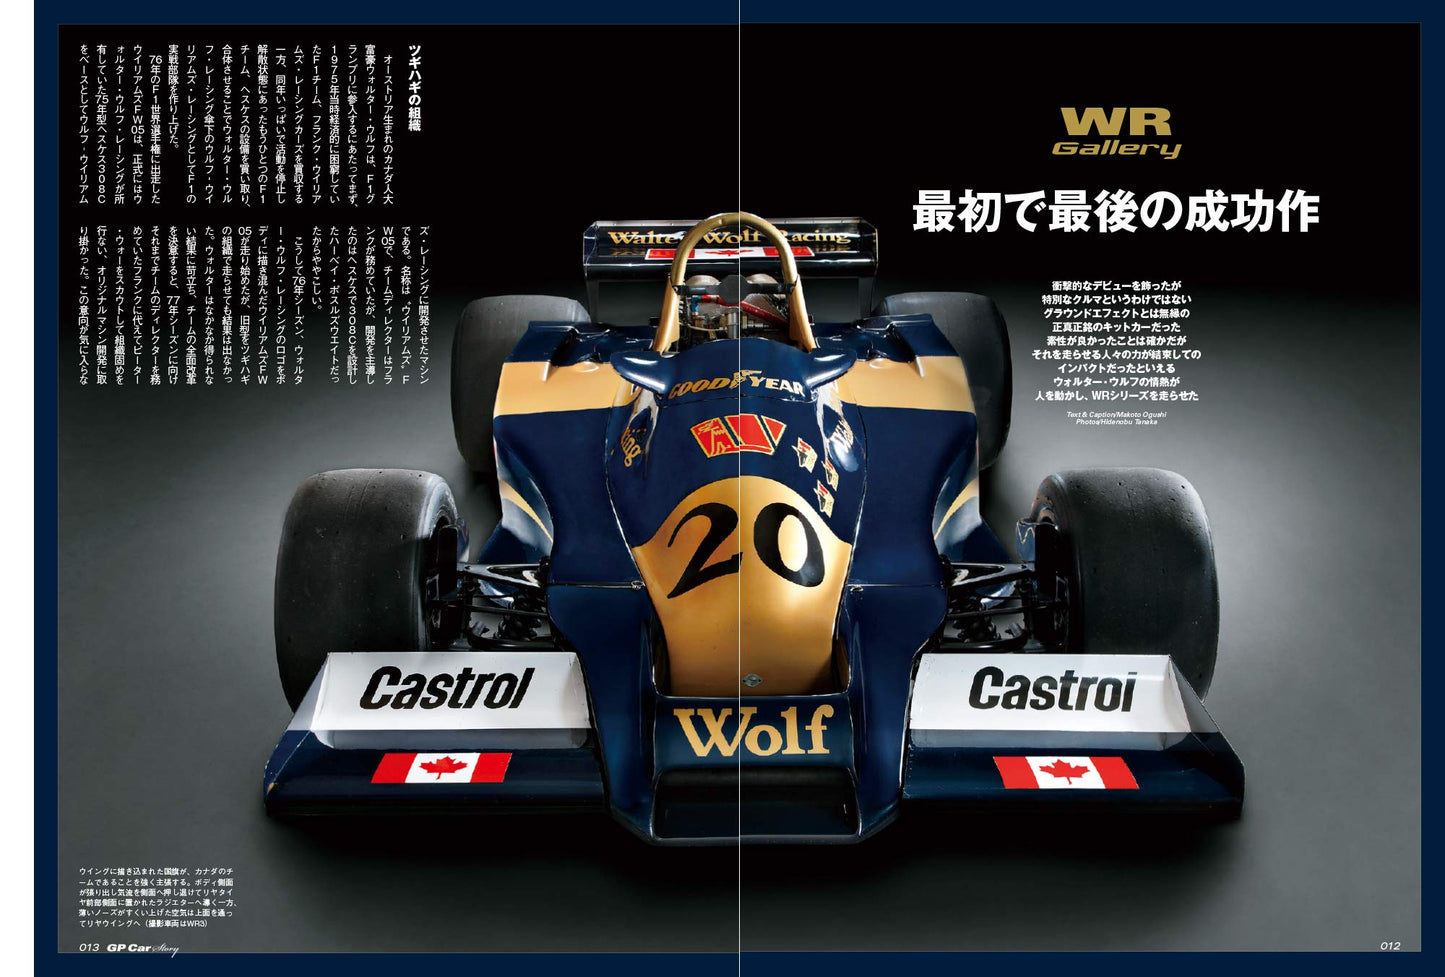 GP CAR STORY Vol. 28 Wolf WR1